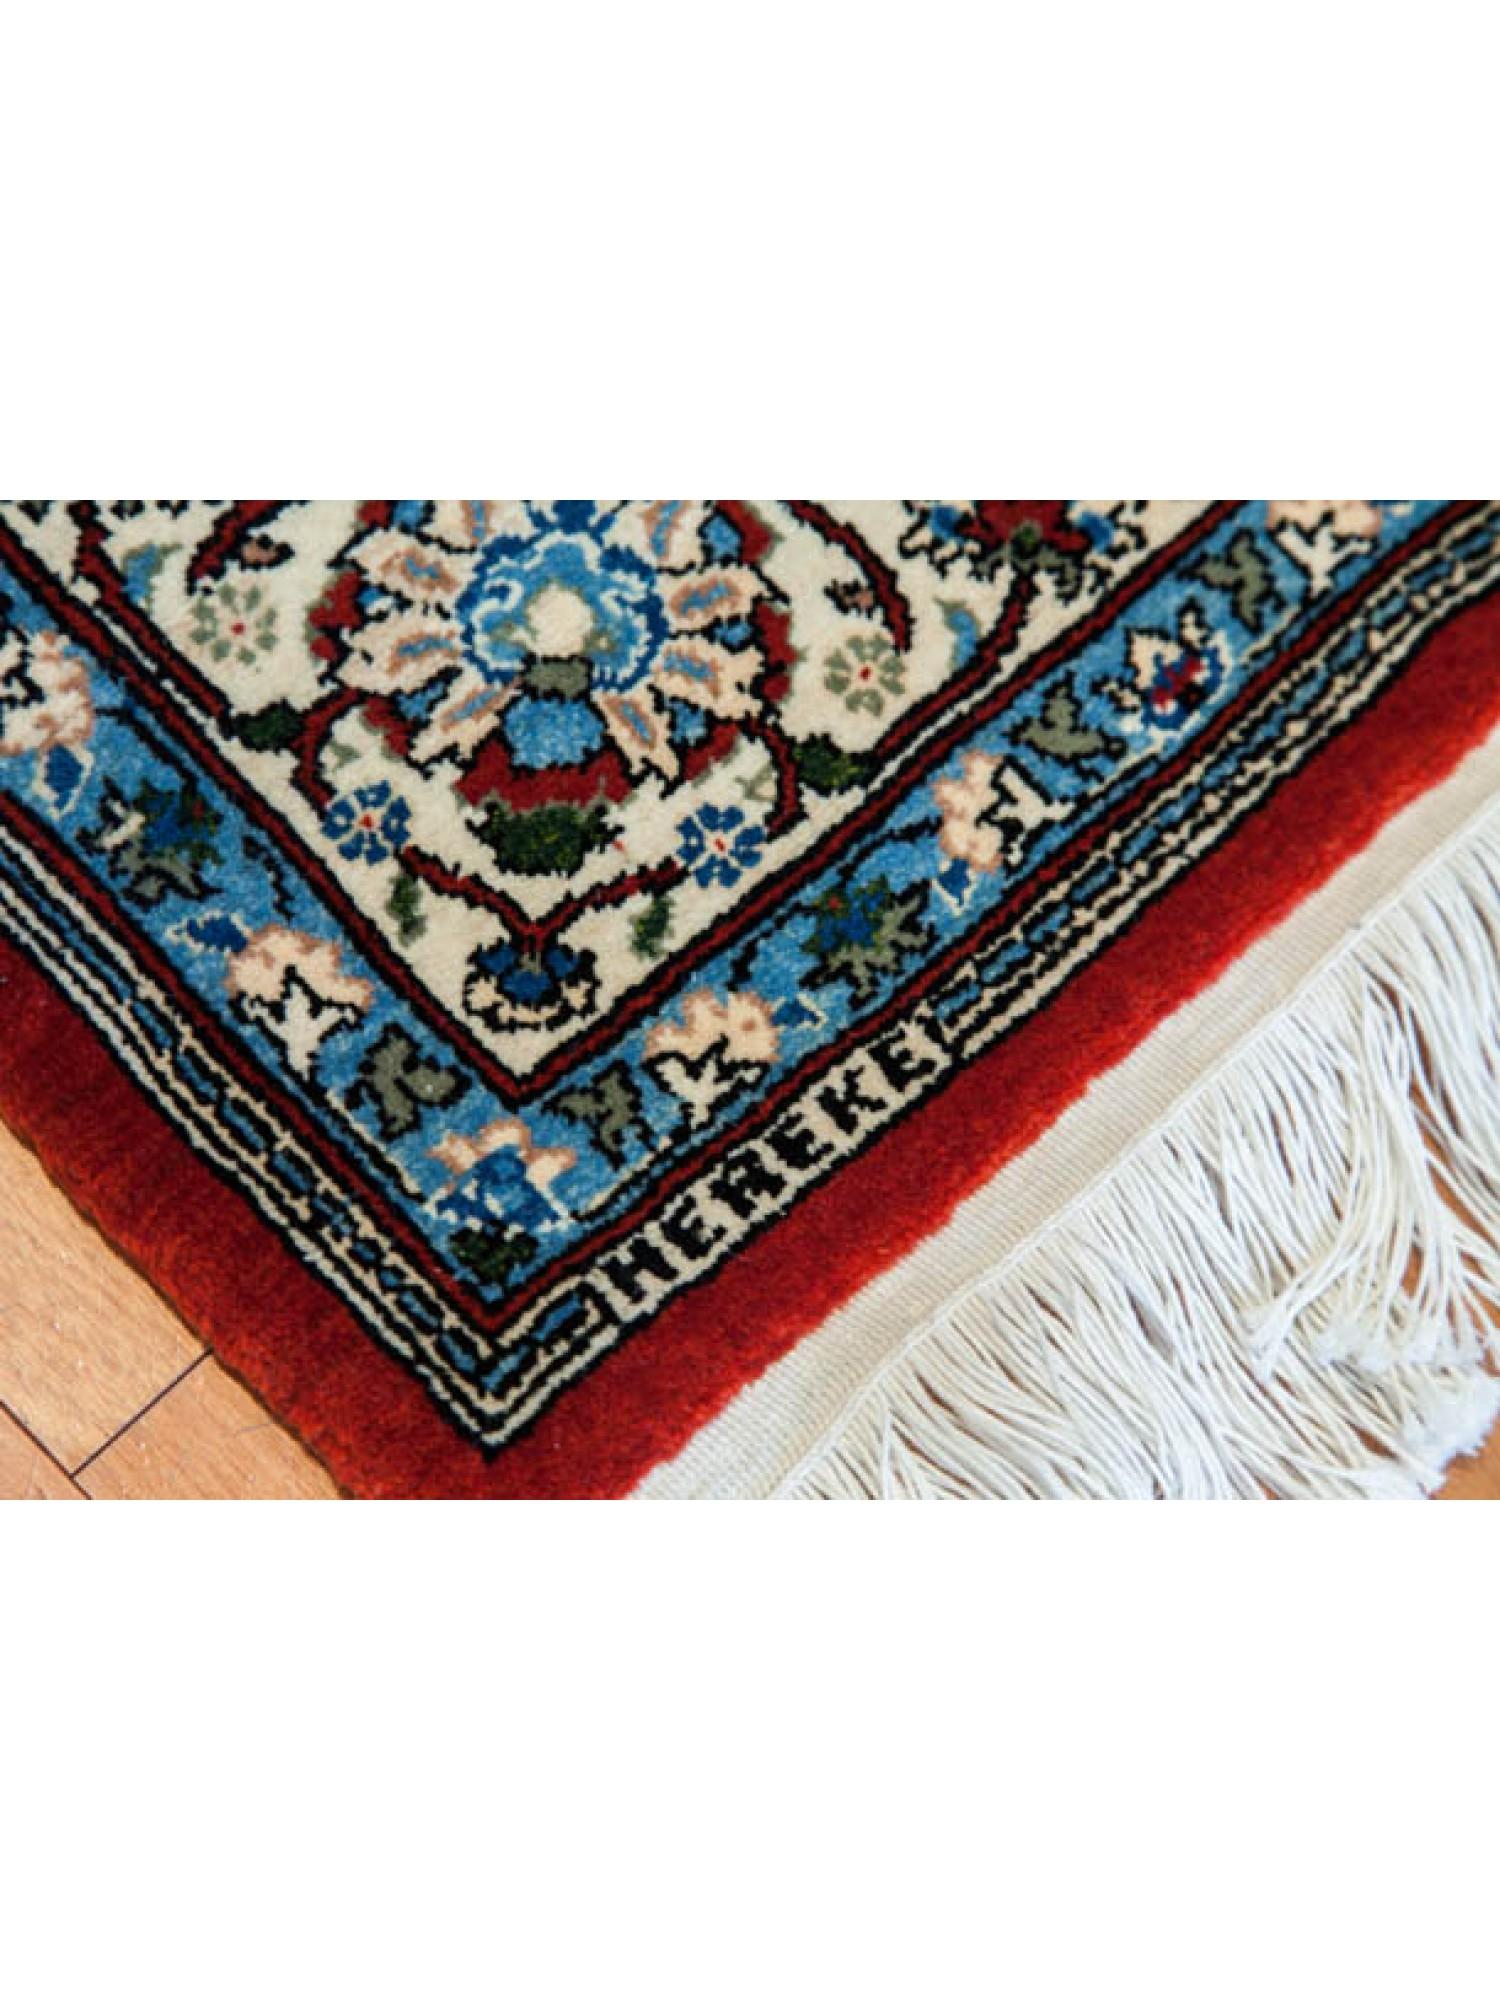 Oushak Hereke Wool & Cotton Carpet, Turkish Anatolian Rug